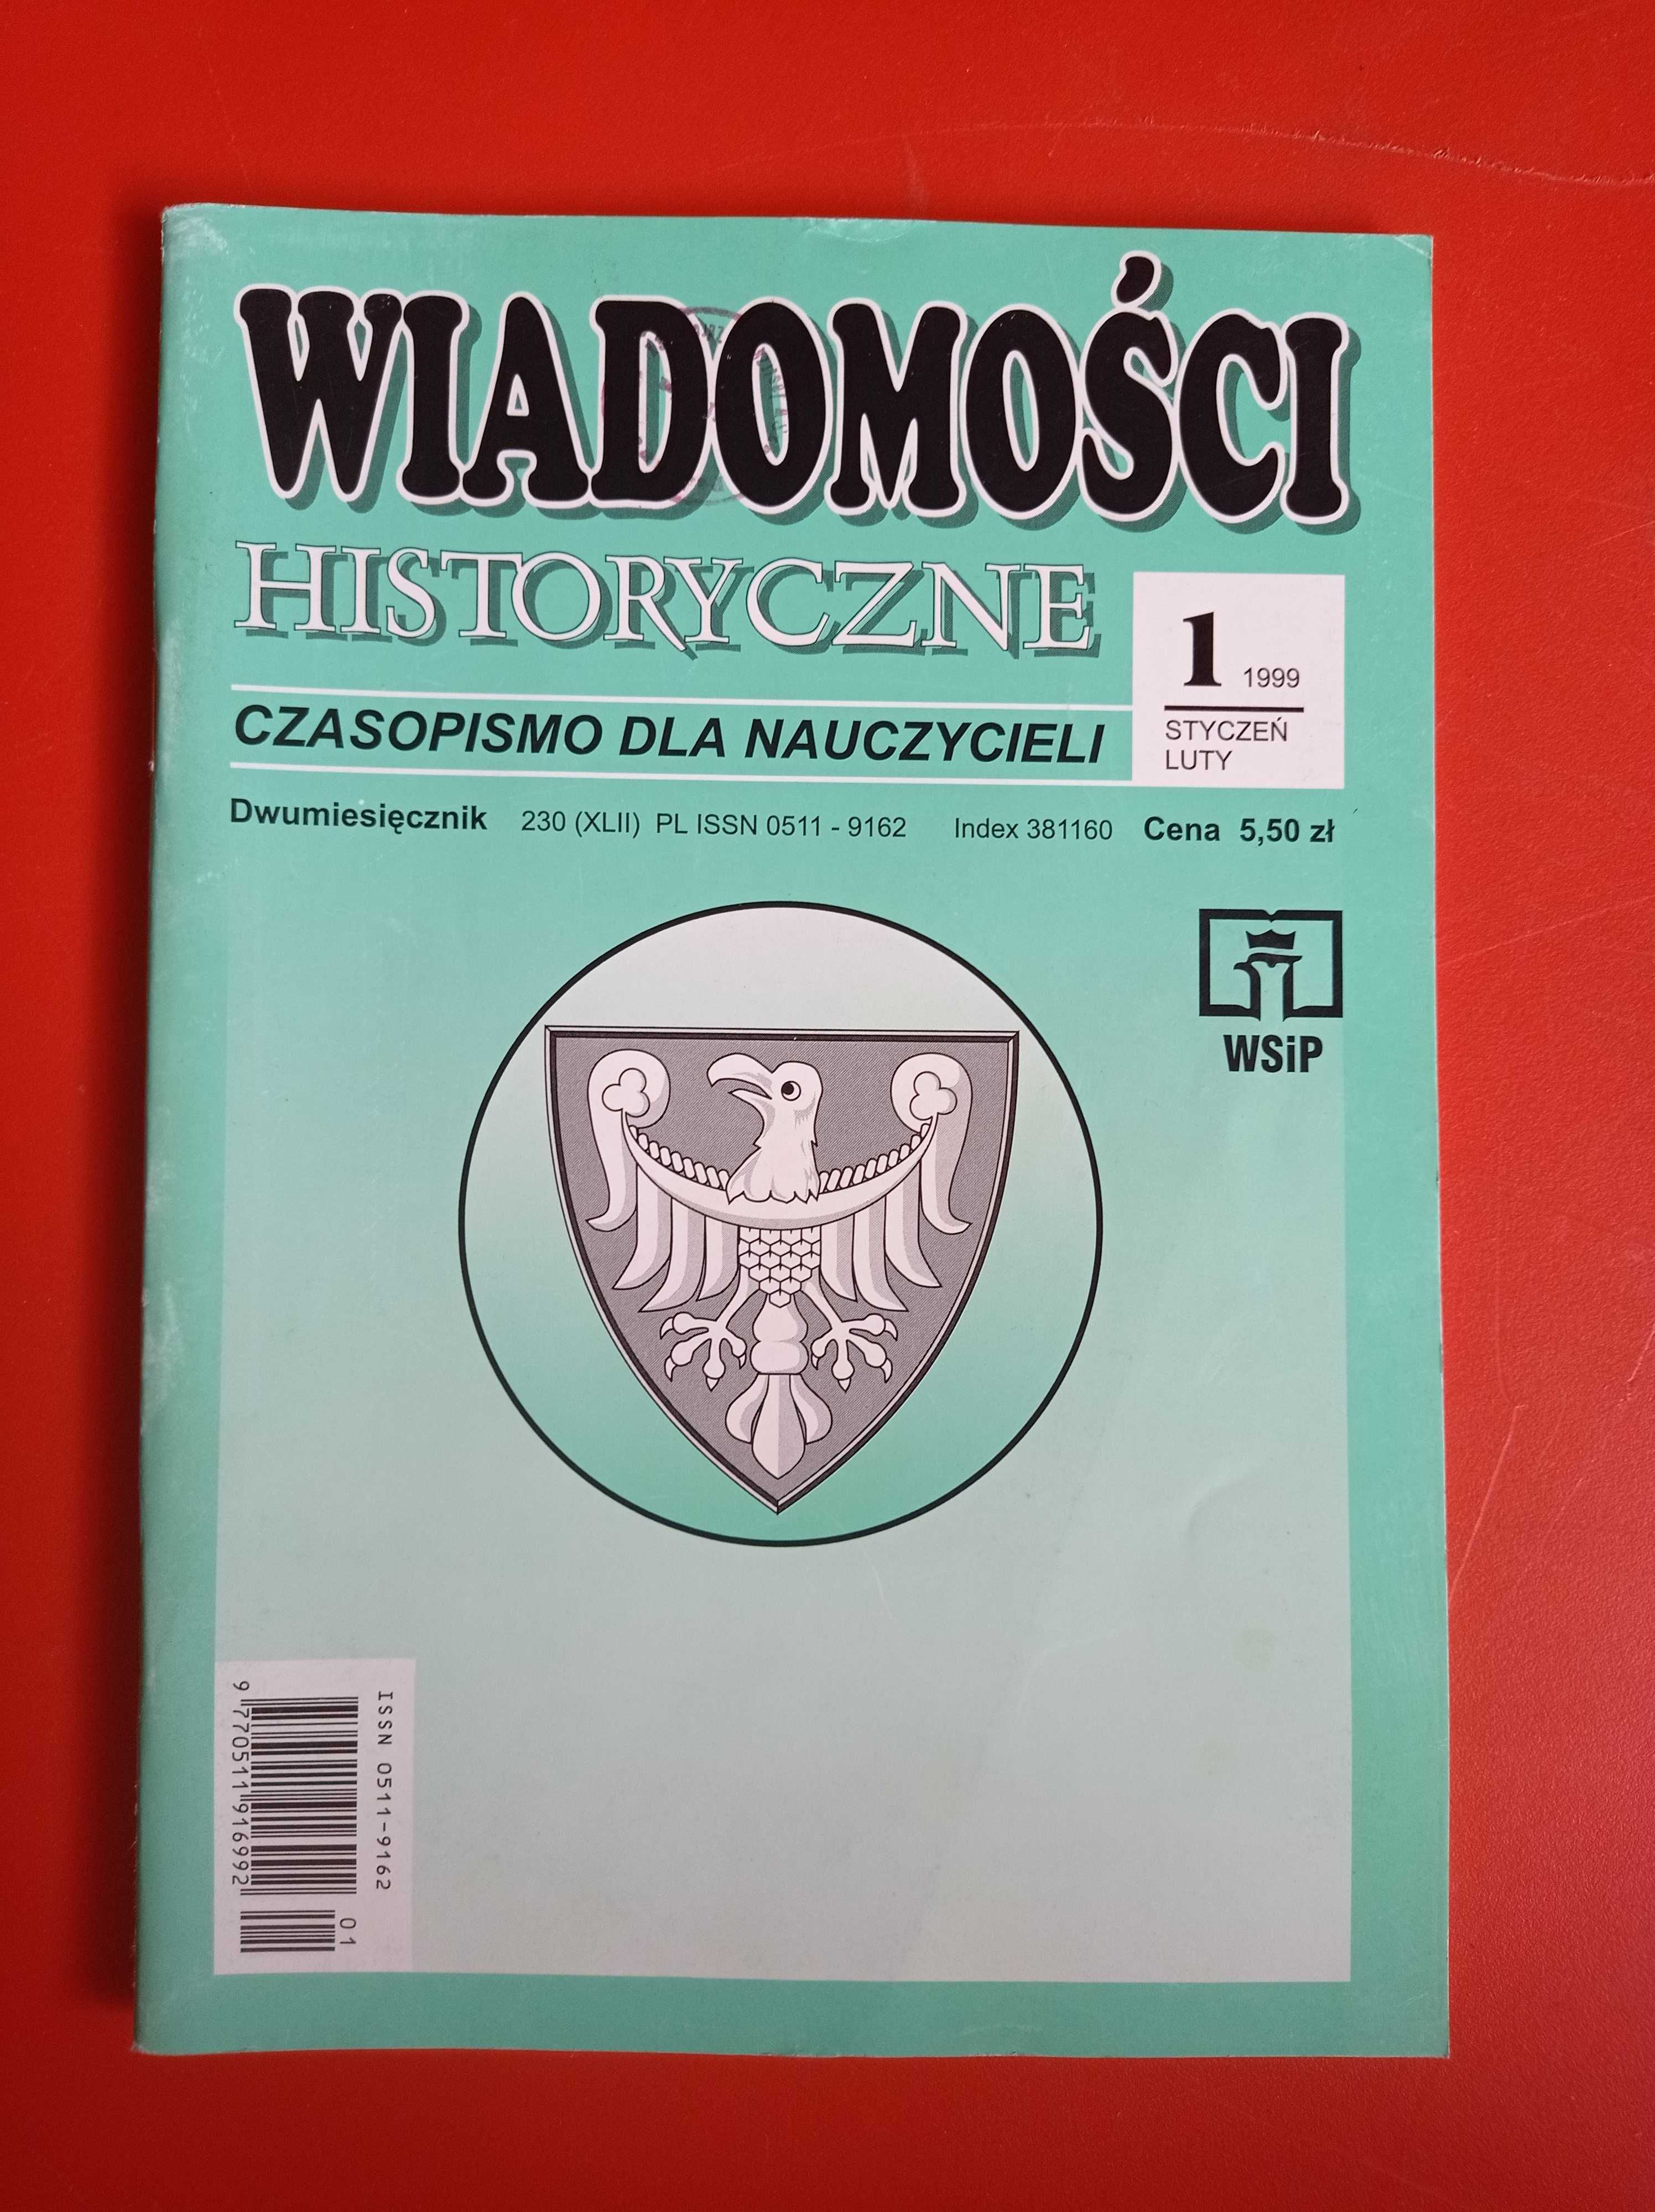 Wiadomości historyczne nr 1 styczeń/luty 1999